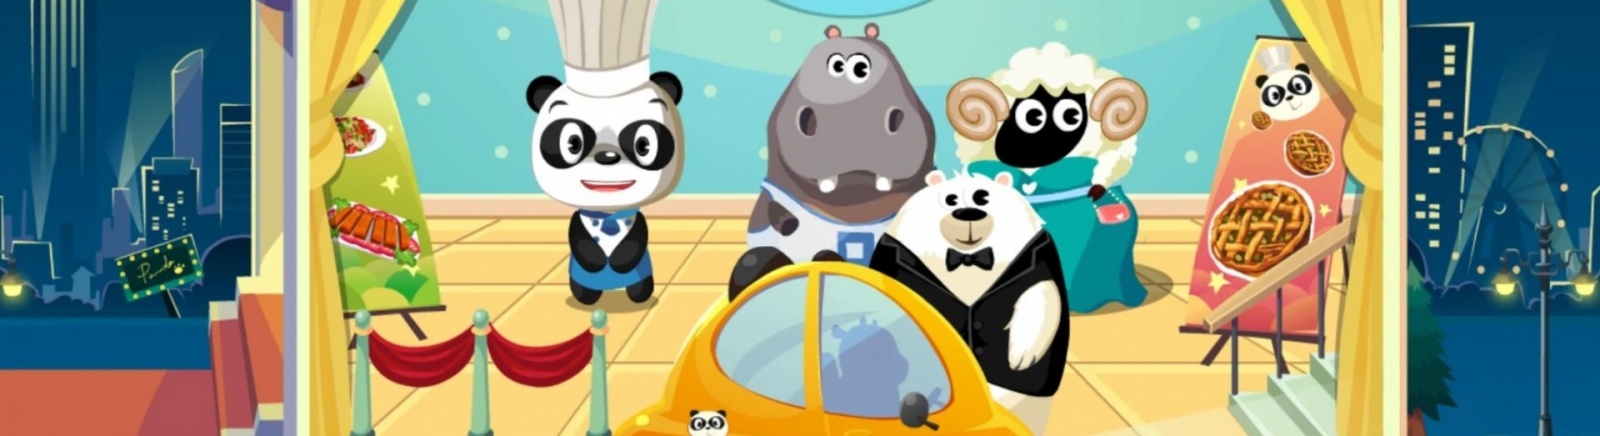 Дата выхода Dr. Panda Restaurant (Ресторан Dr. Panda)  на iOS и Android в России и во всем мире